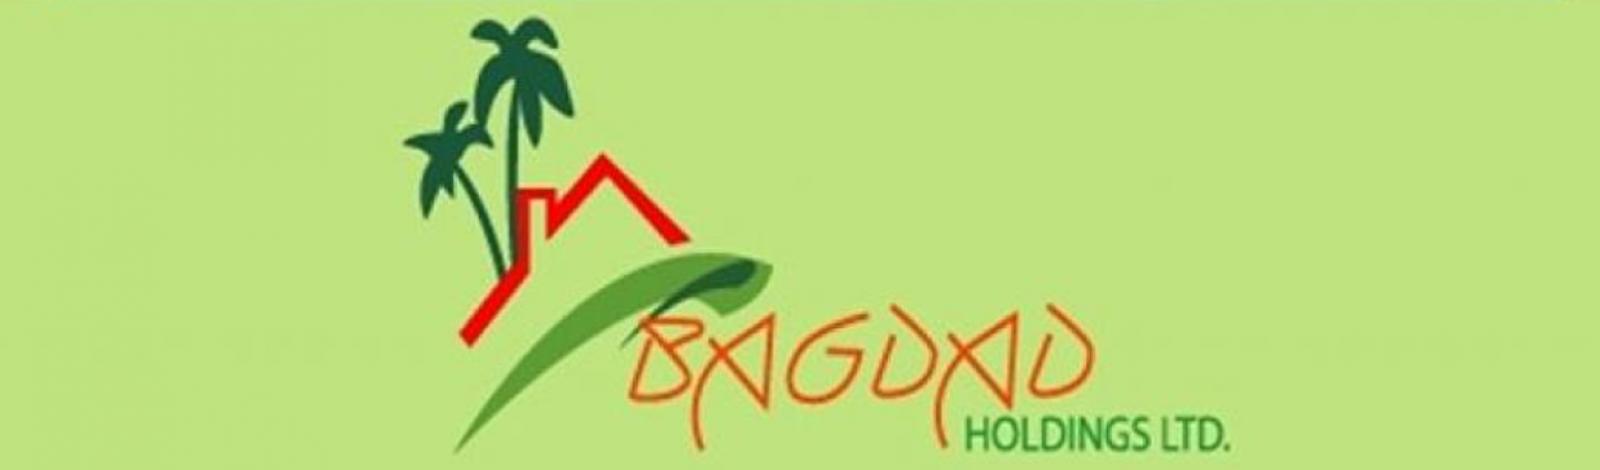 Bagdad Holdings Ltd banner